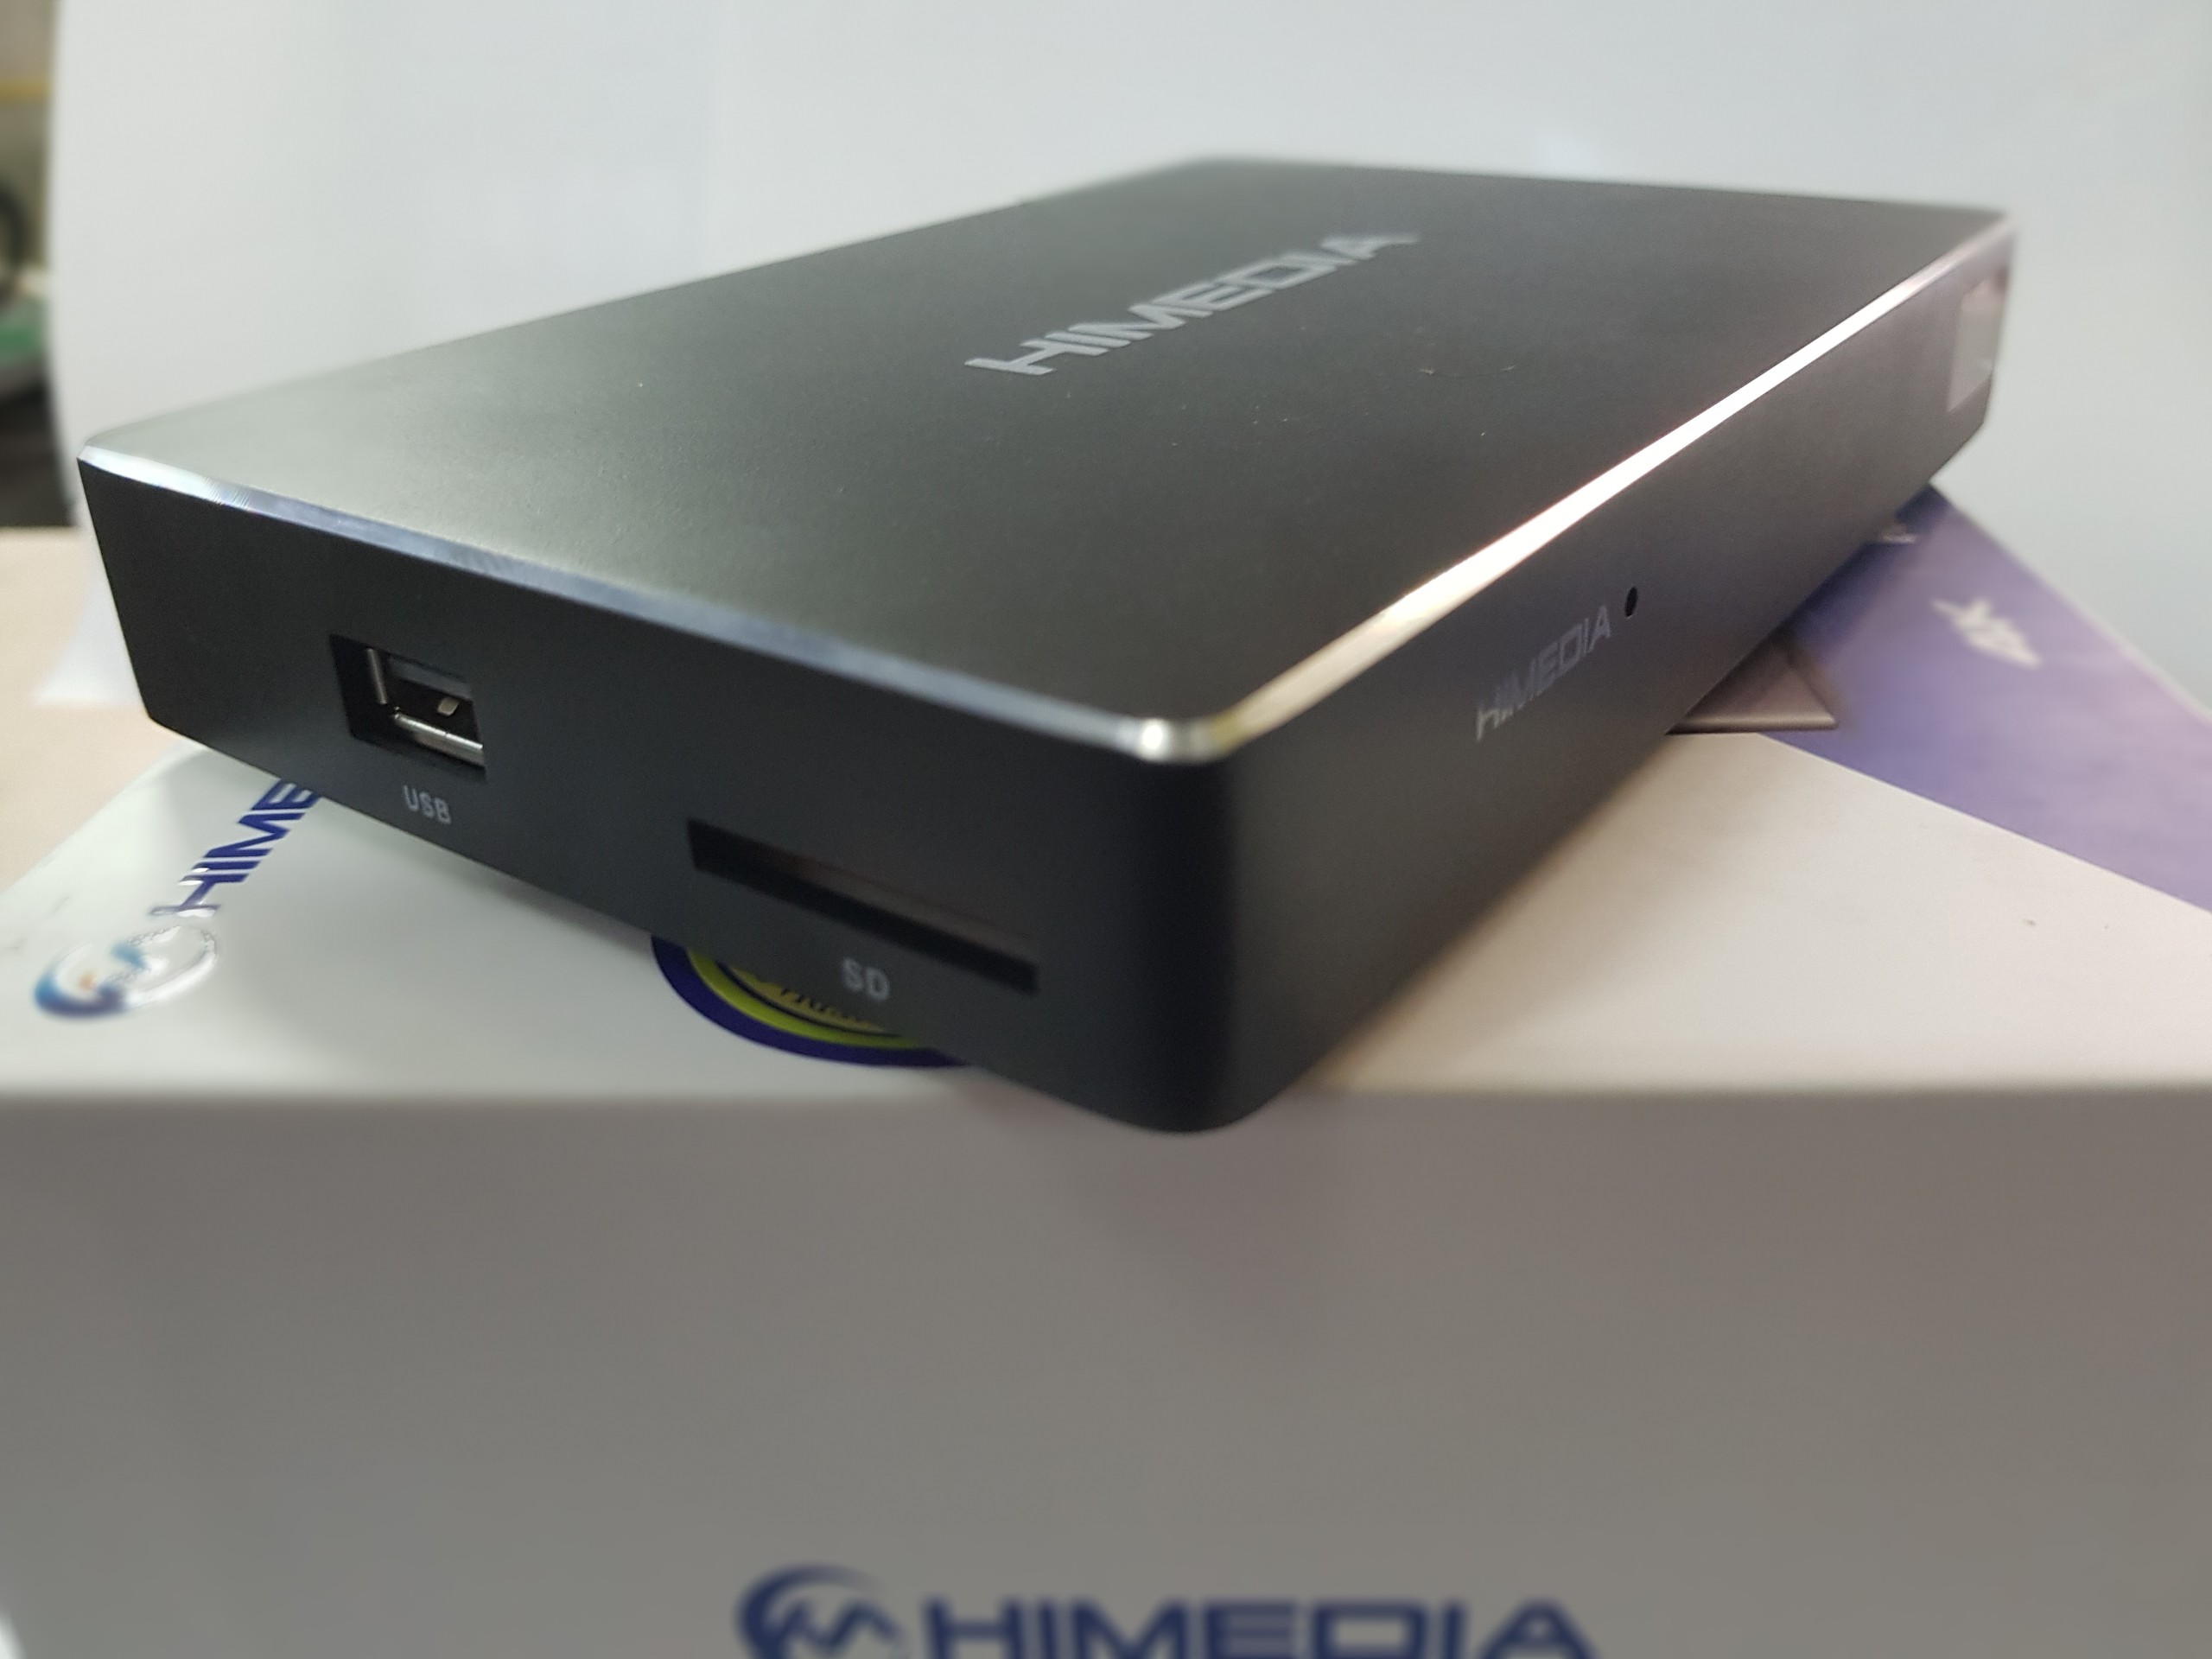 Android Box Himedia A5 2020 tặng điều khiển Voice V5pro, Tài khoản HDplay - Xử lý hình ảnh Siêu Net 4K, Âm thanh cao cấp - SẢN PHẨM CHÍNH HÃNG